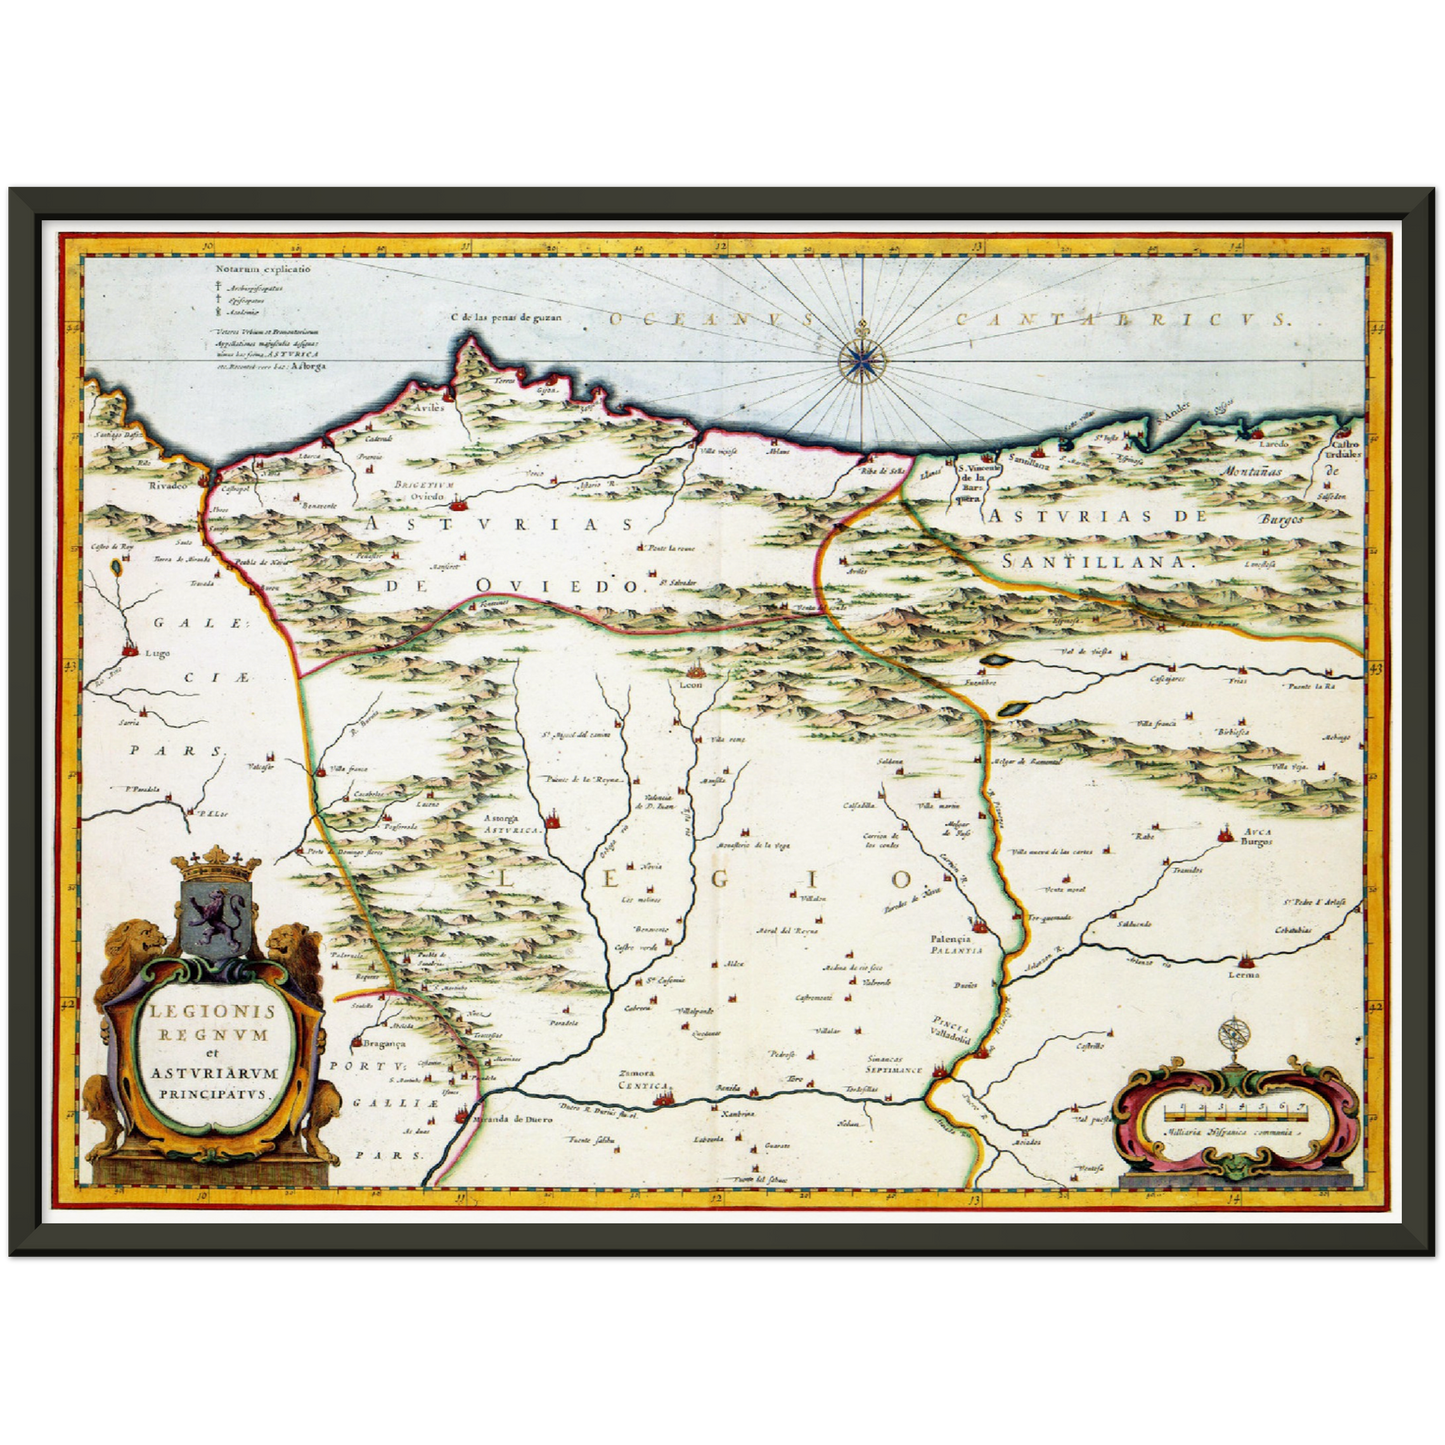 Historische Landkarte Asturien um 1690